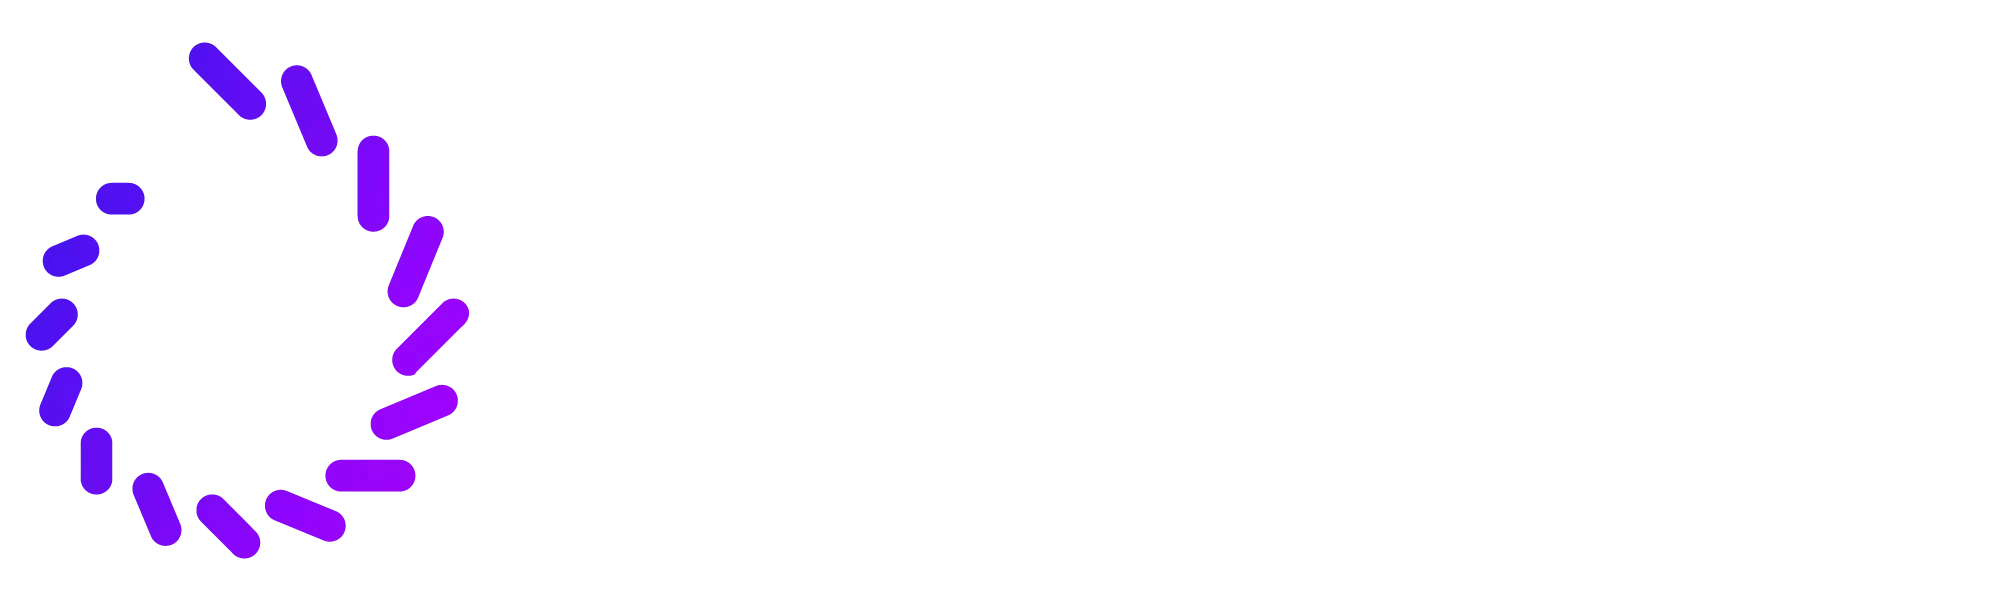 orgenesis-logo-white